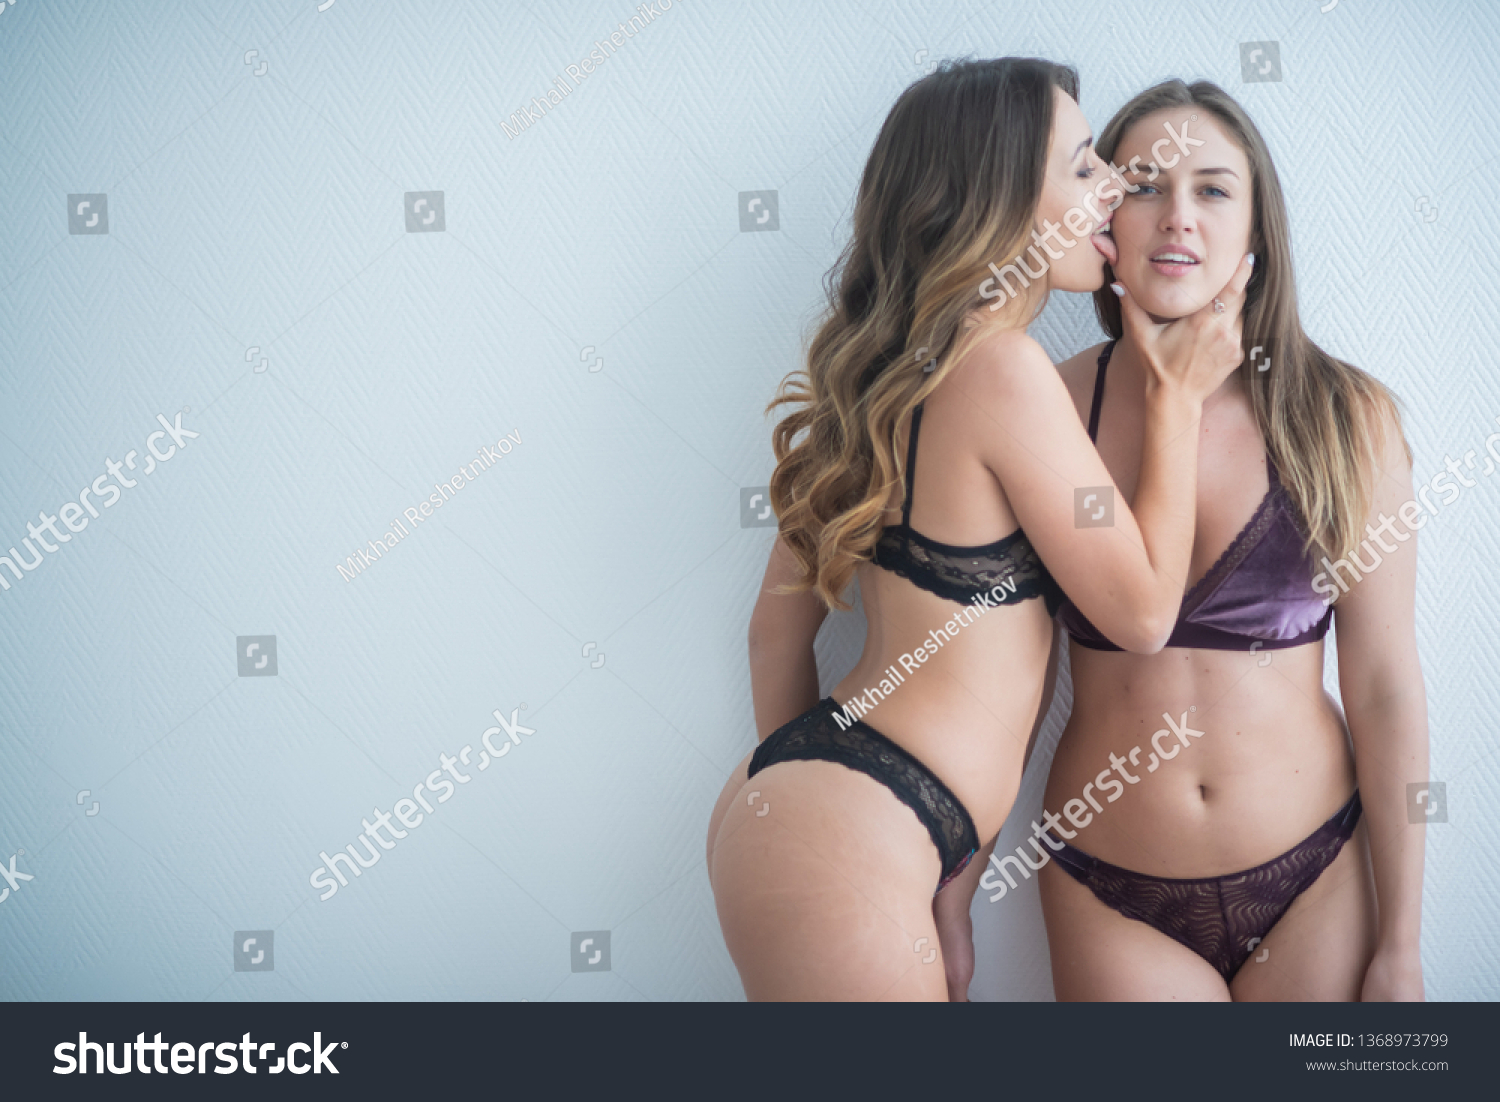 Lesbian kissing in lingerie